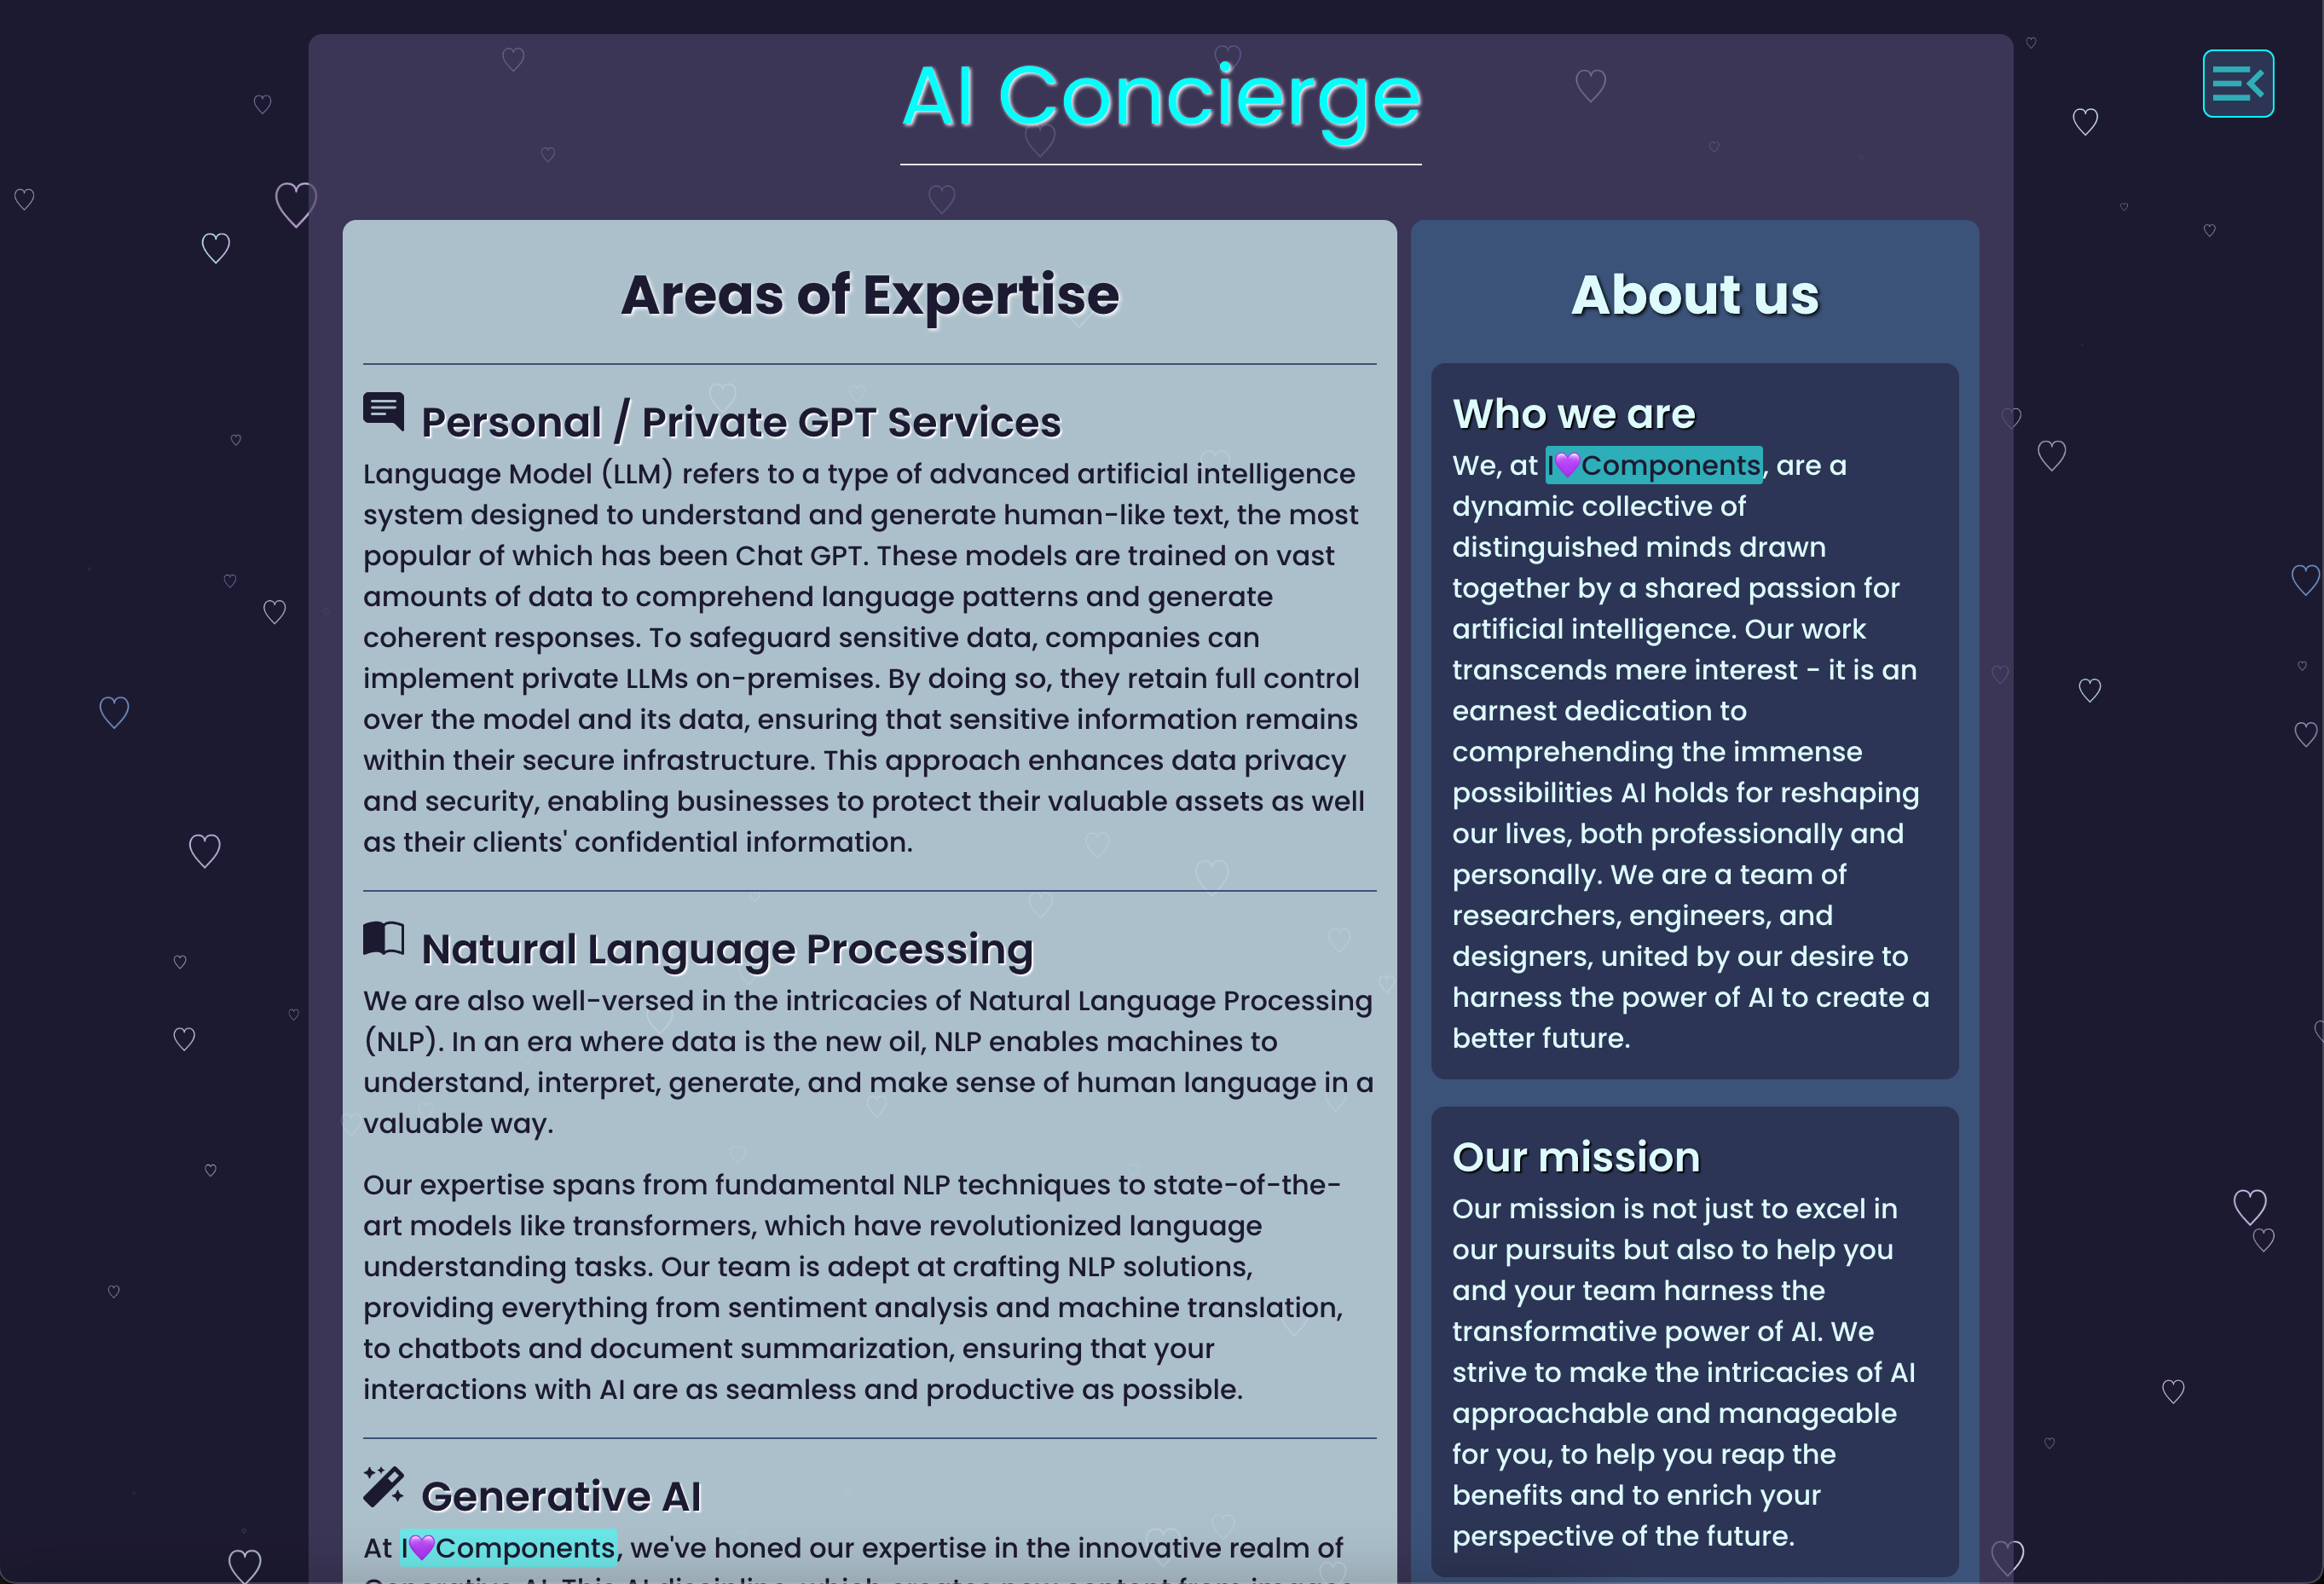 I💜Components - AI Concierge